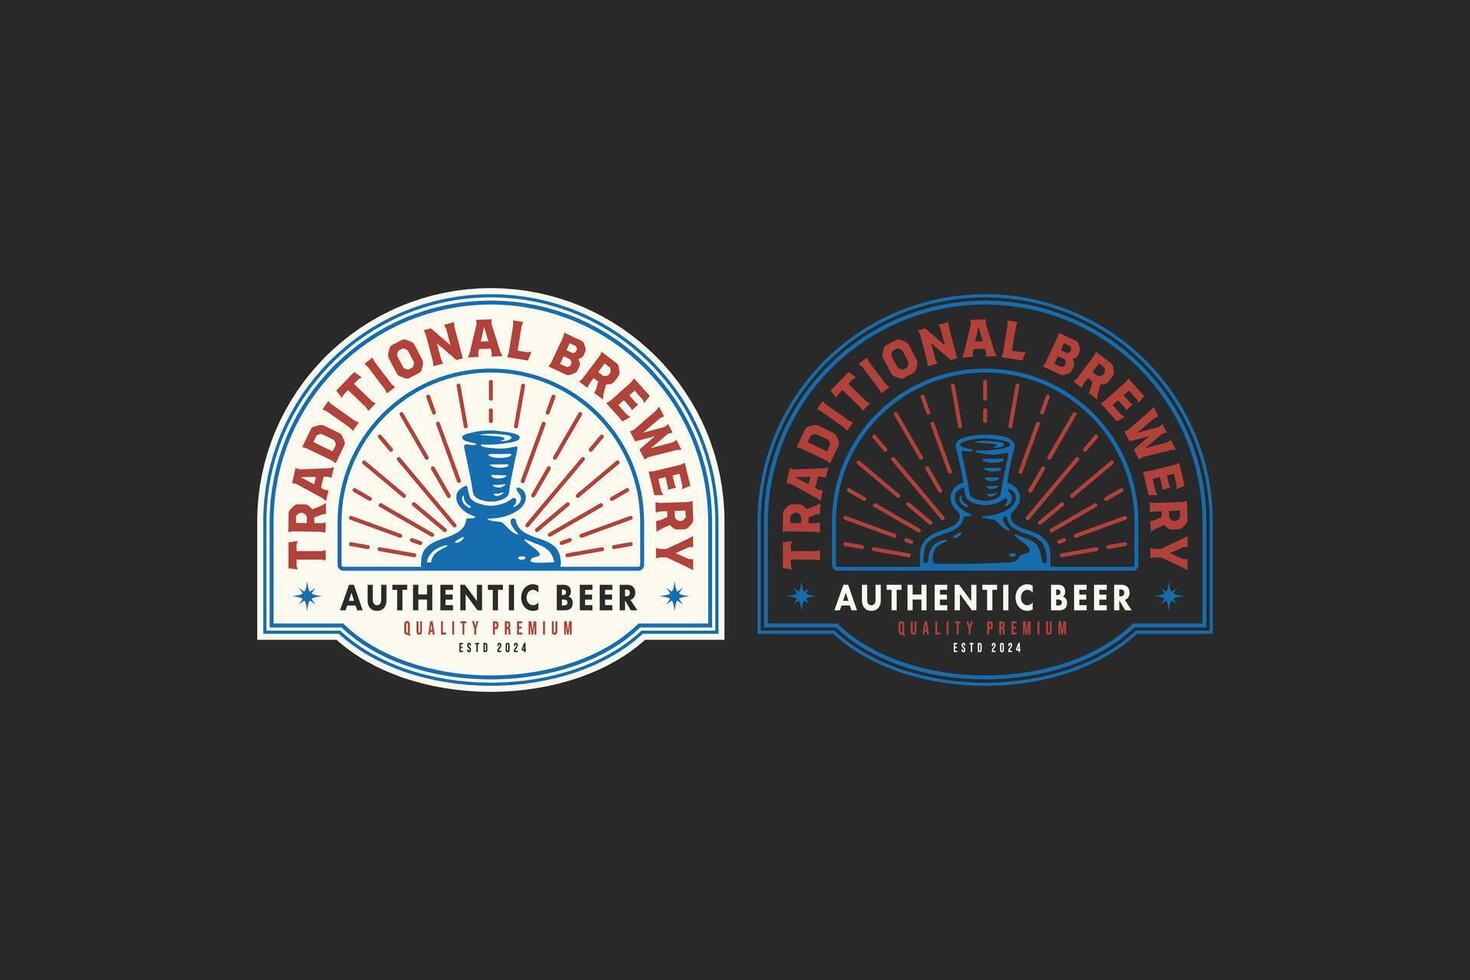 ambacht bier met houten kurk en fles logo grafisch voor brouwen bedrijf label, teken, symbool of merk identiteit vector